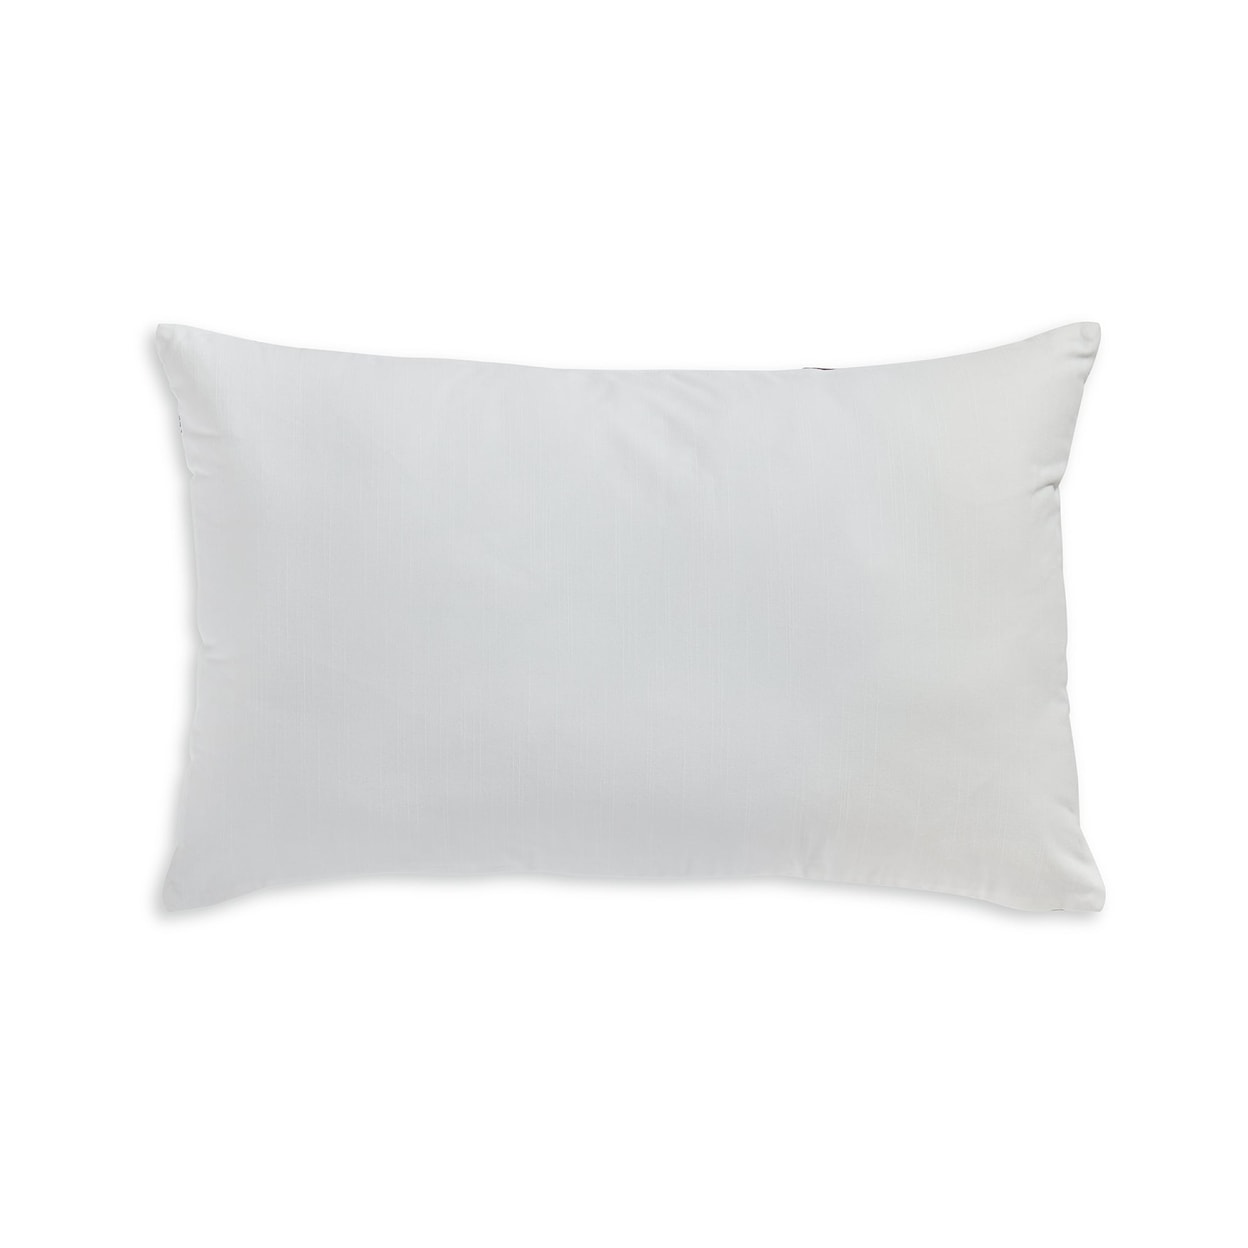 Signature Design Lanston Accent Pillow (Set of 4)